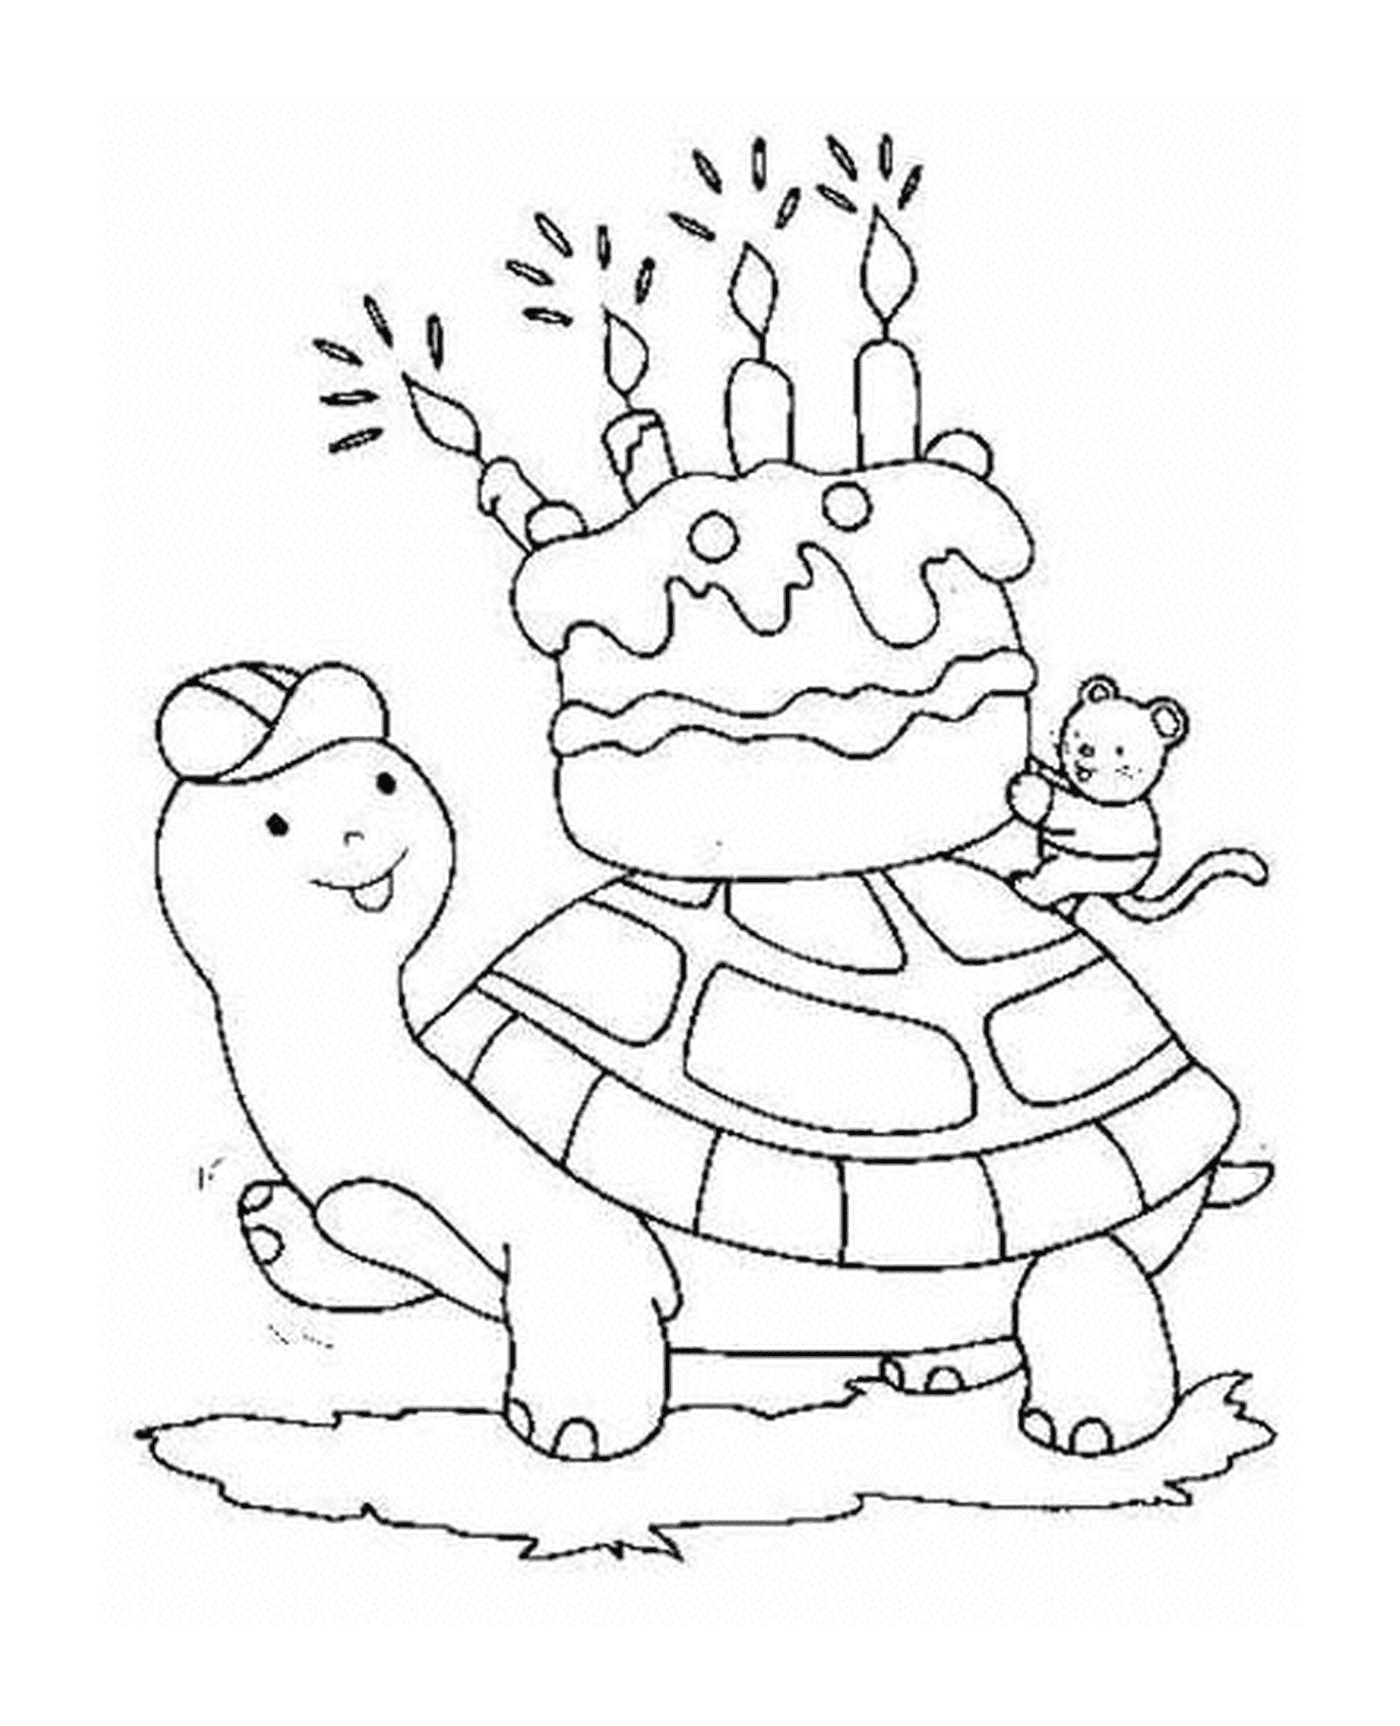  Schildkröte trägt einen Geburtstagstorte 